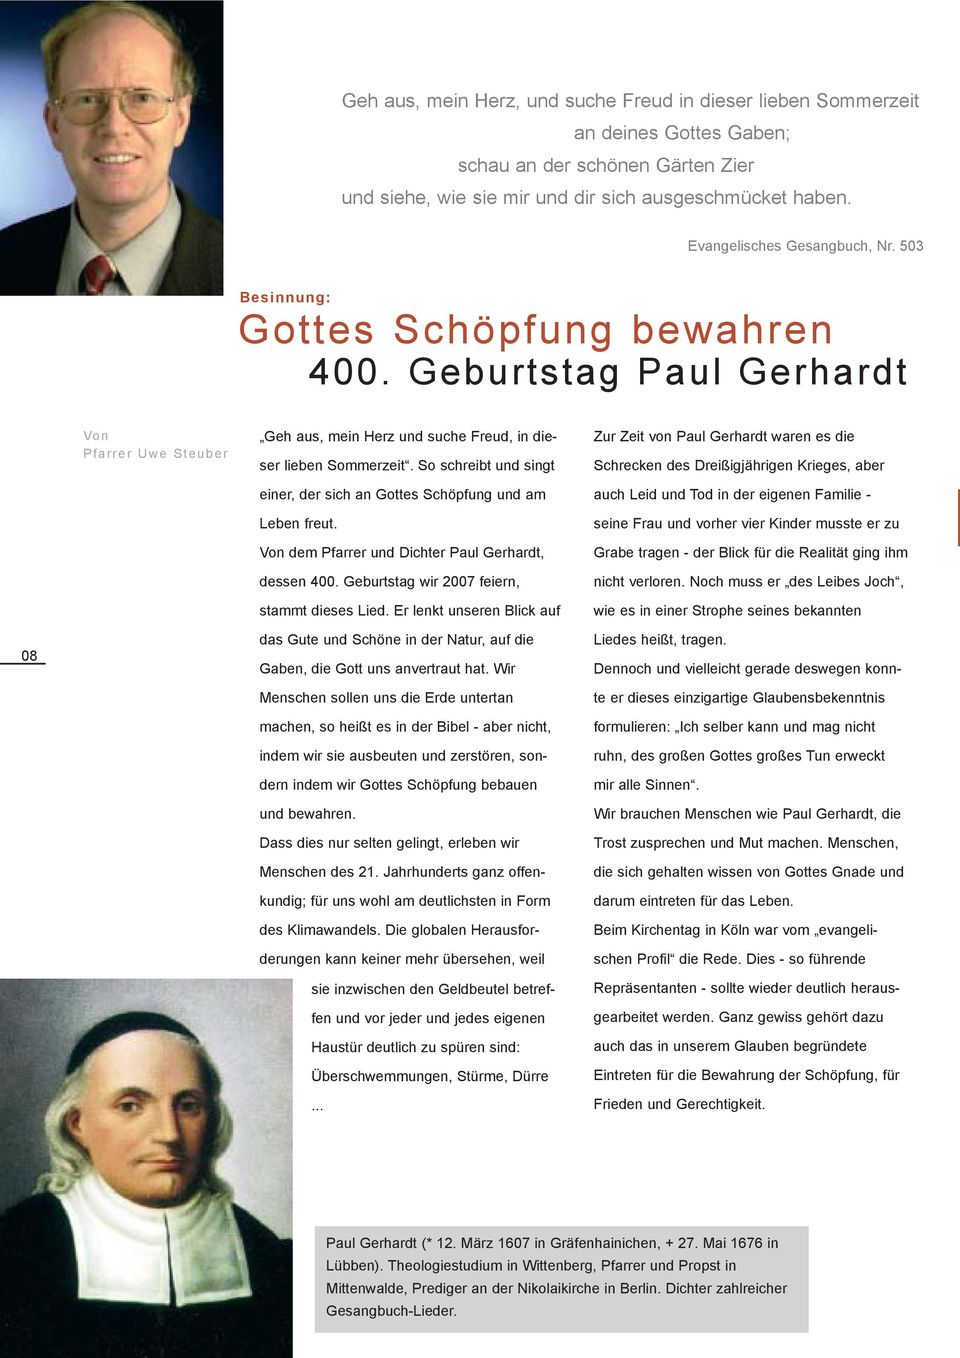 So schreibt und singt einer, der sich an Gottes Schöpfung und am Leben freut. Von dem Pfarrer und Dichter Paul Gerhardt, dessen 400. Geburtstag wir 2007 feiern, stammt dieses Lied.